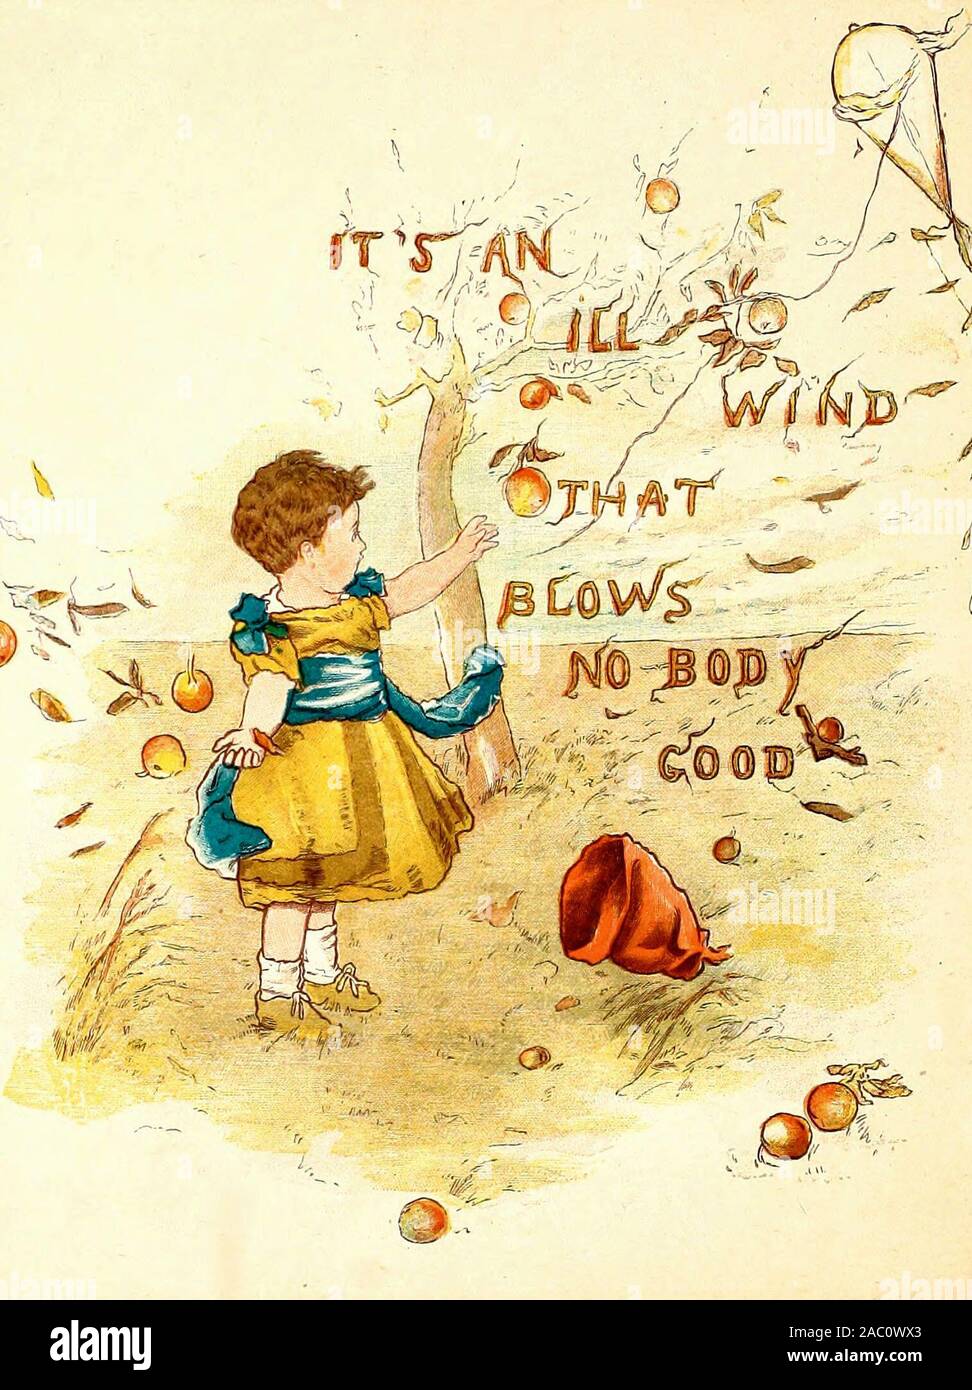 Si tratta di un malato vento che soffia nessun corpo buona - un vintage illustrazione di un antico proverbio Foto Stock